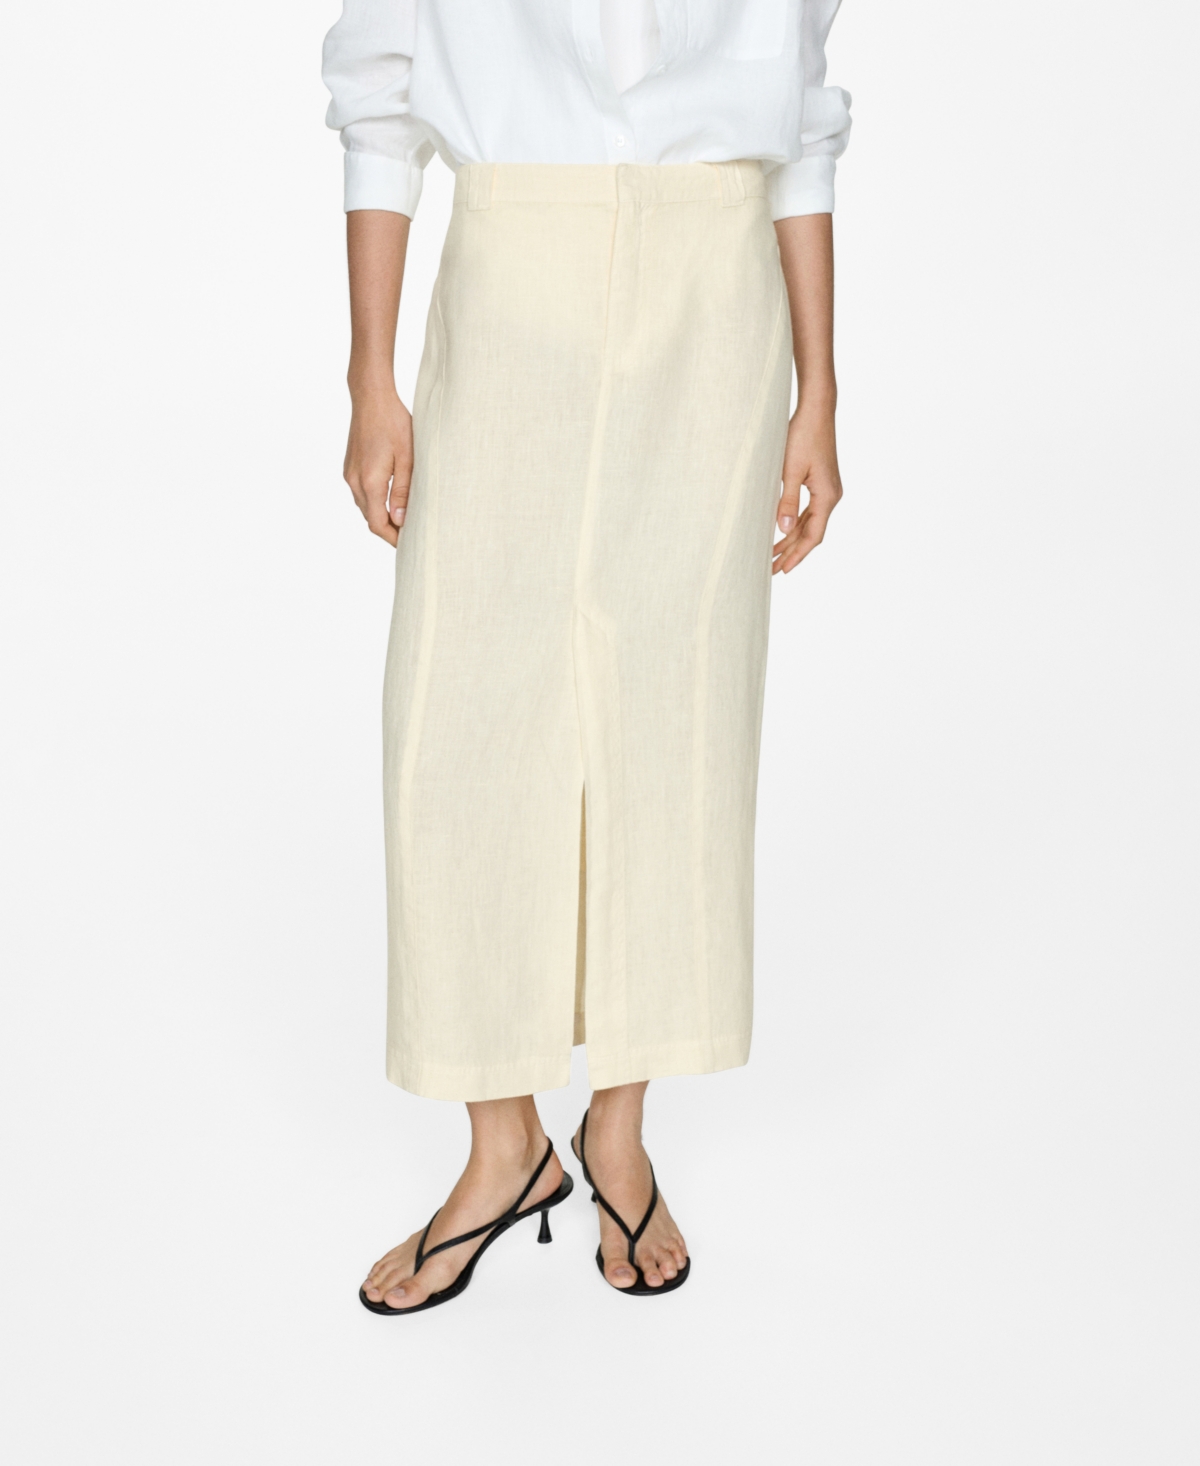 Women's Slit Detail Linen Skirt - Pastel Yellow